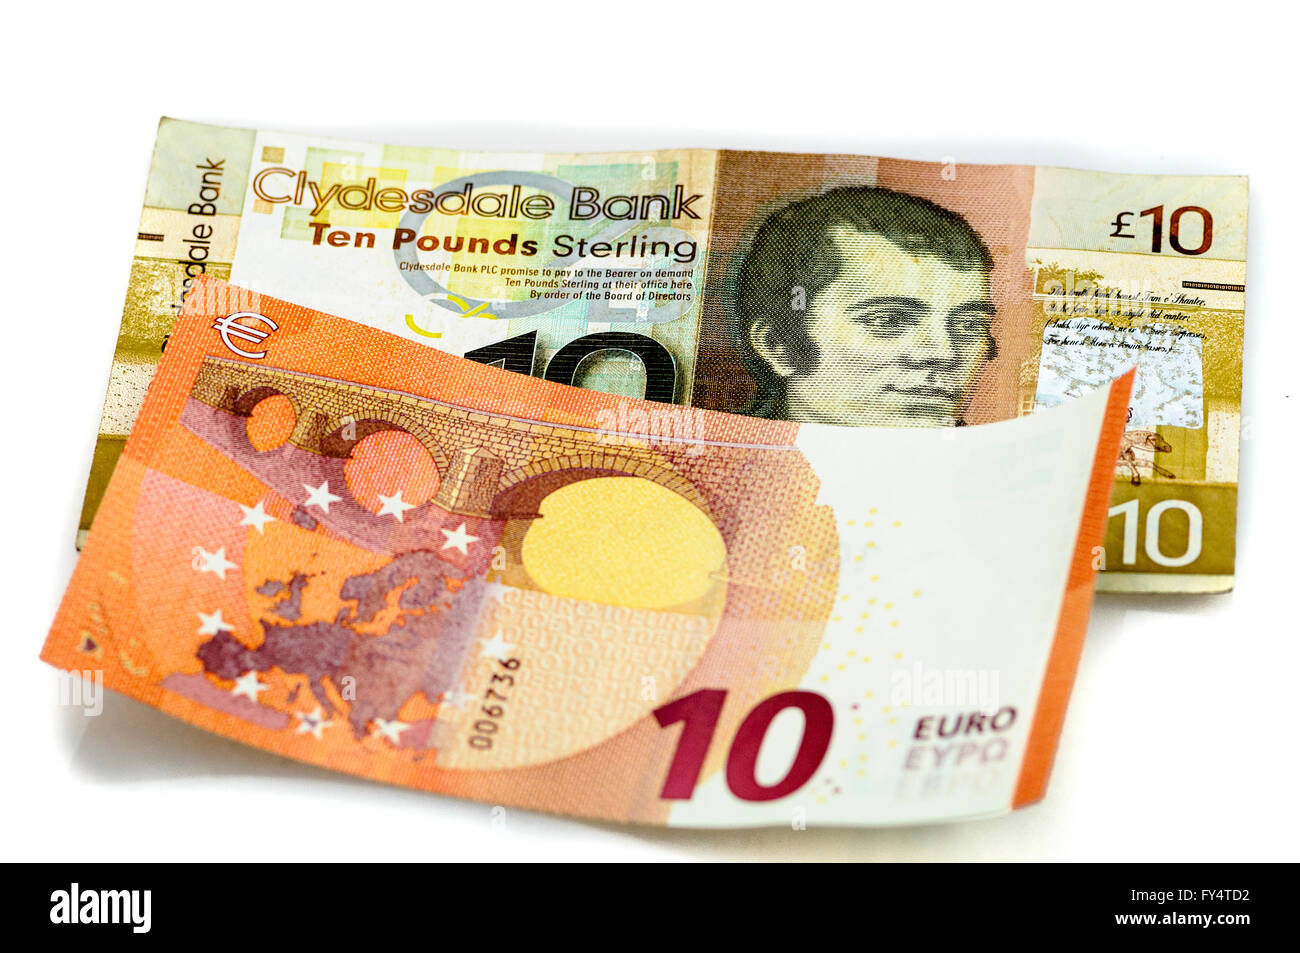 Clydesdale Bank £10 Hinweis aus Schottland mit €10 Euro. Stockfoto